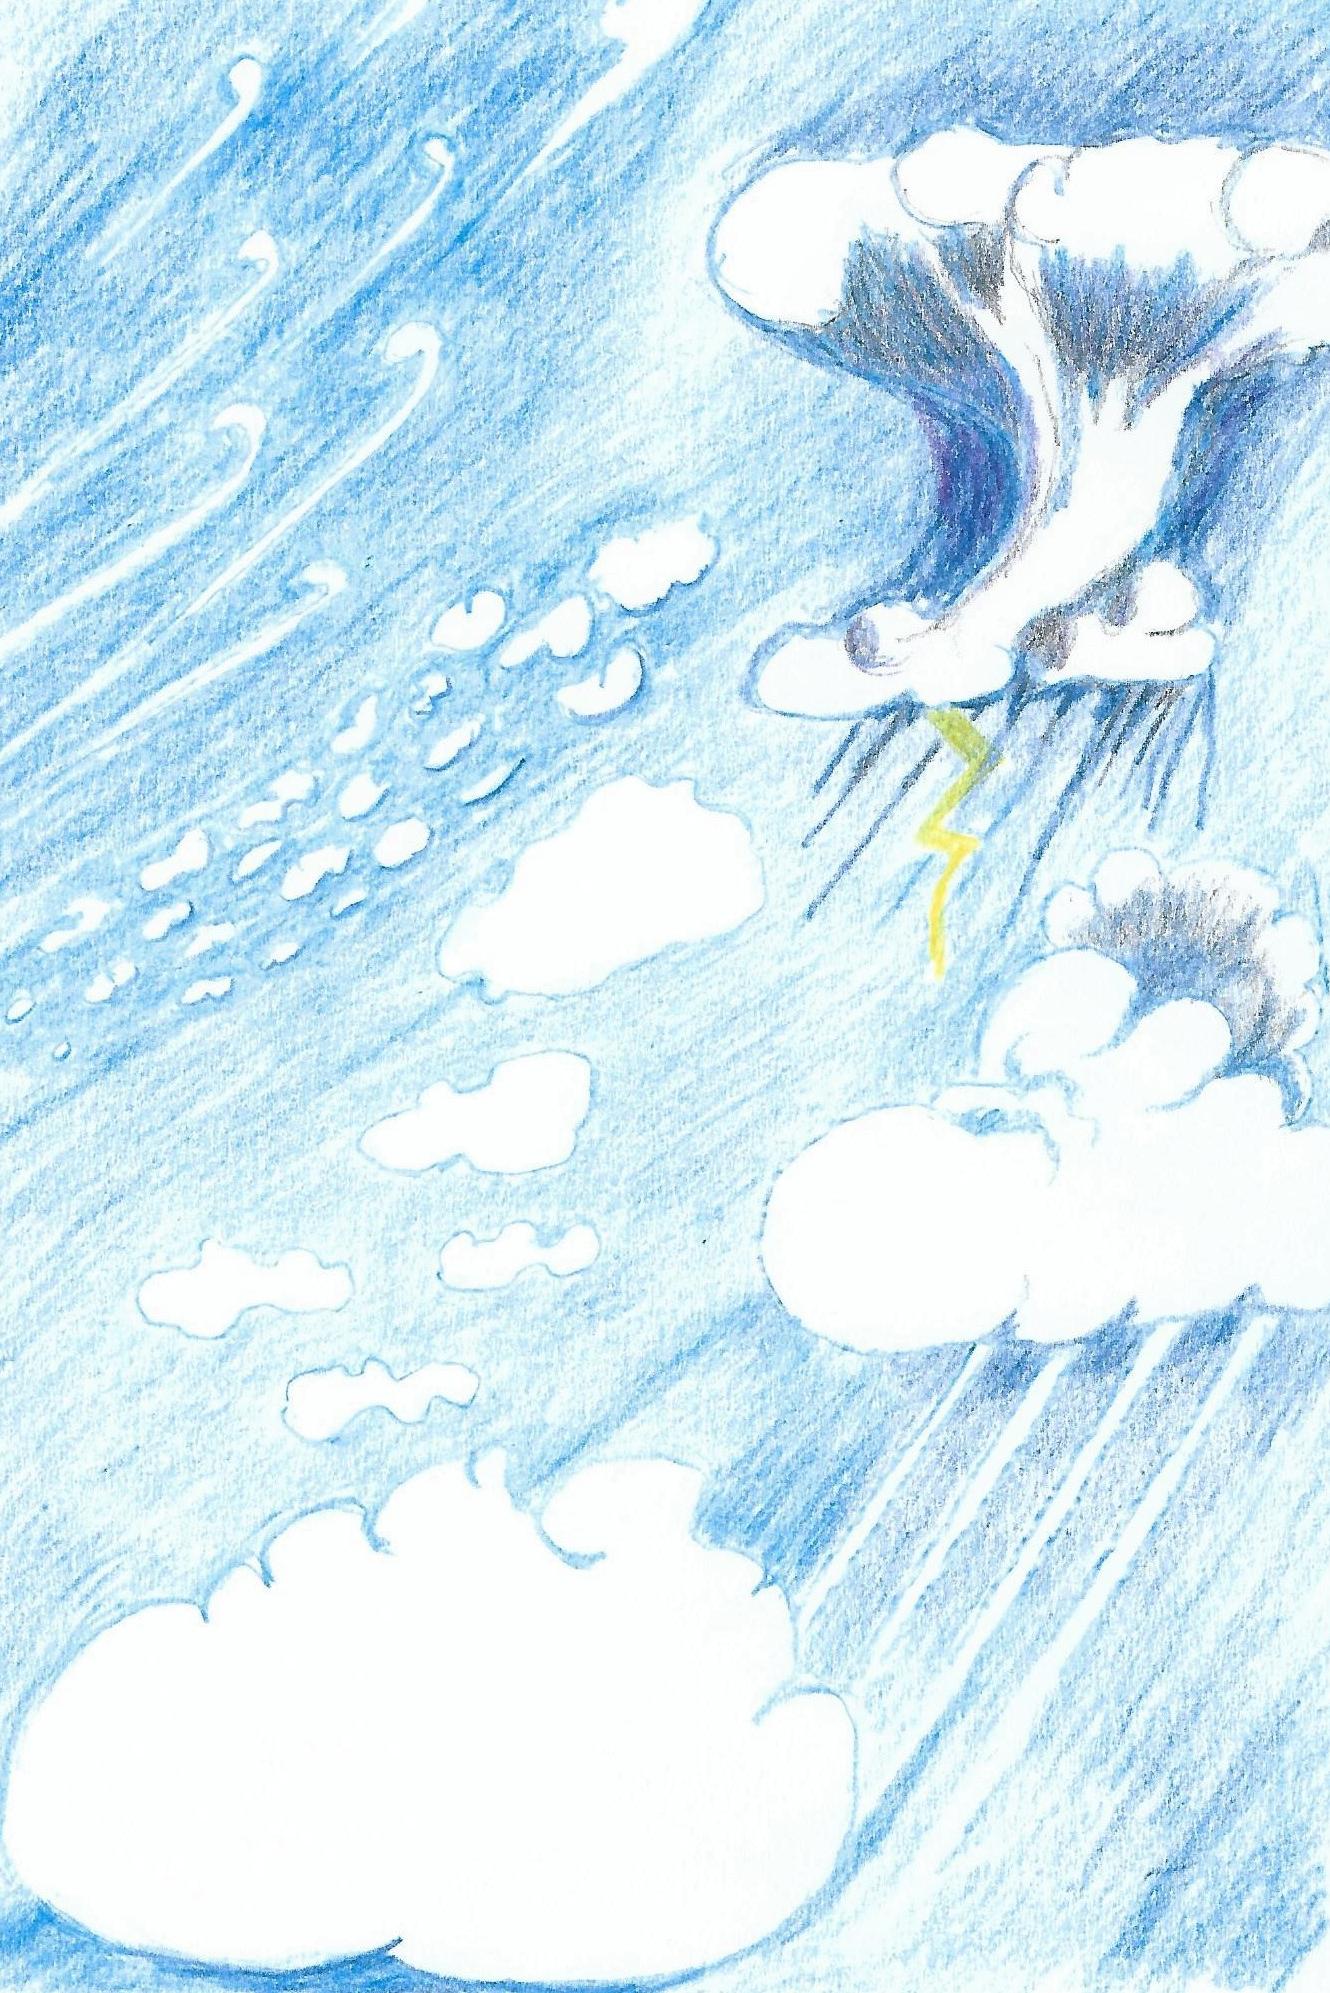 En illustrerad bild av olika moln och väder.